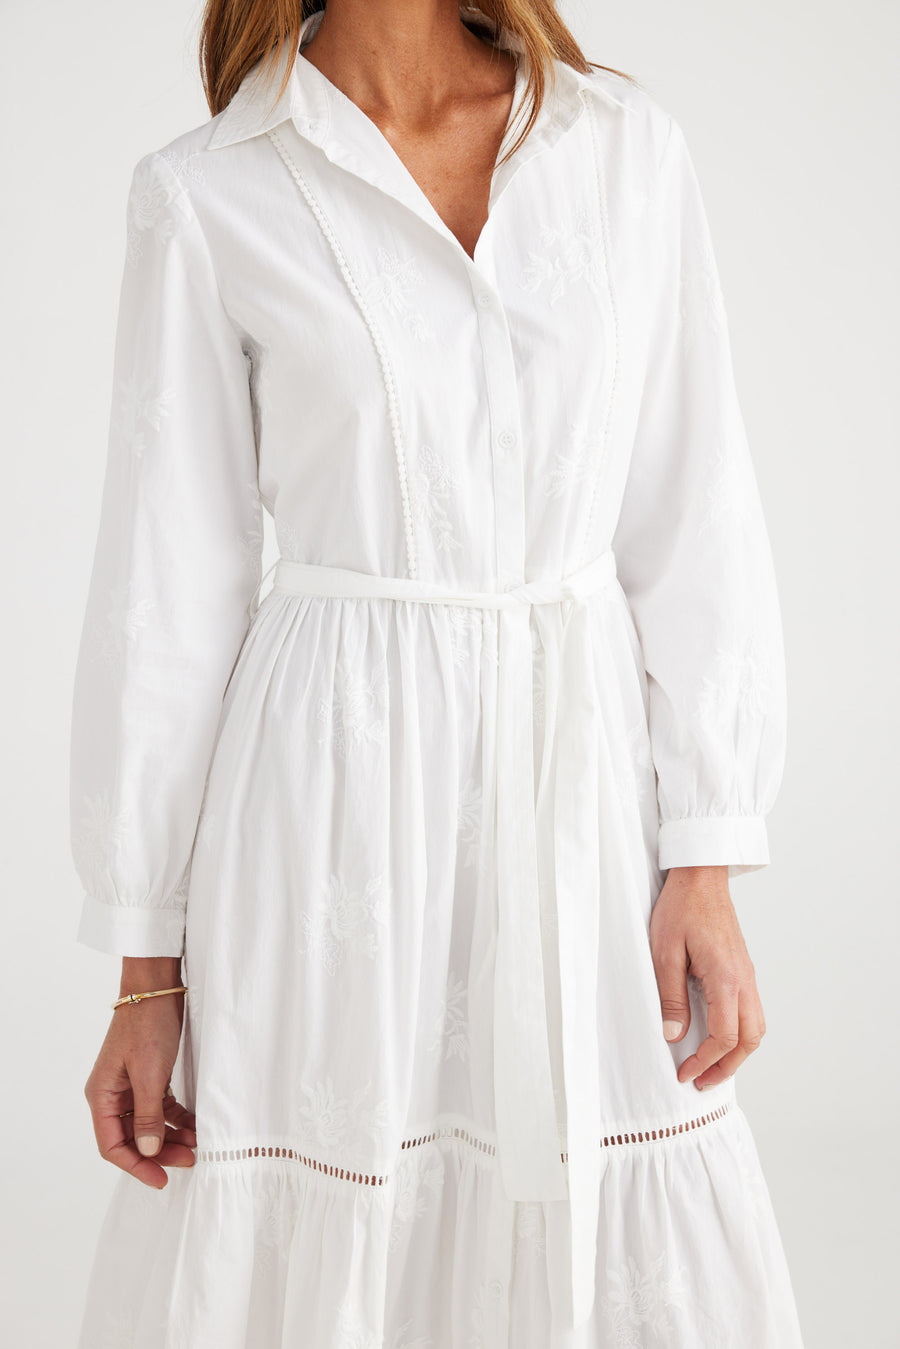 Reggiani Dress - White